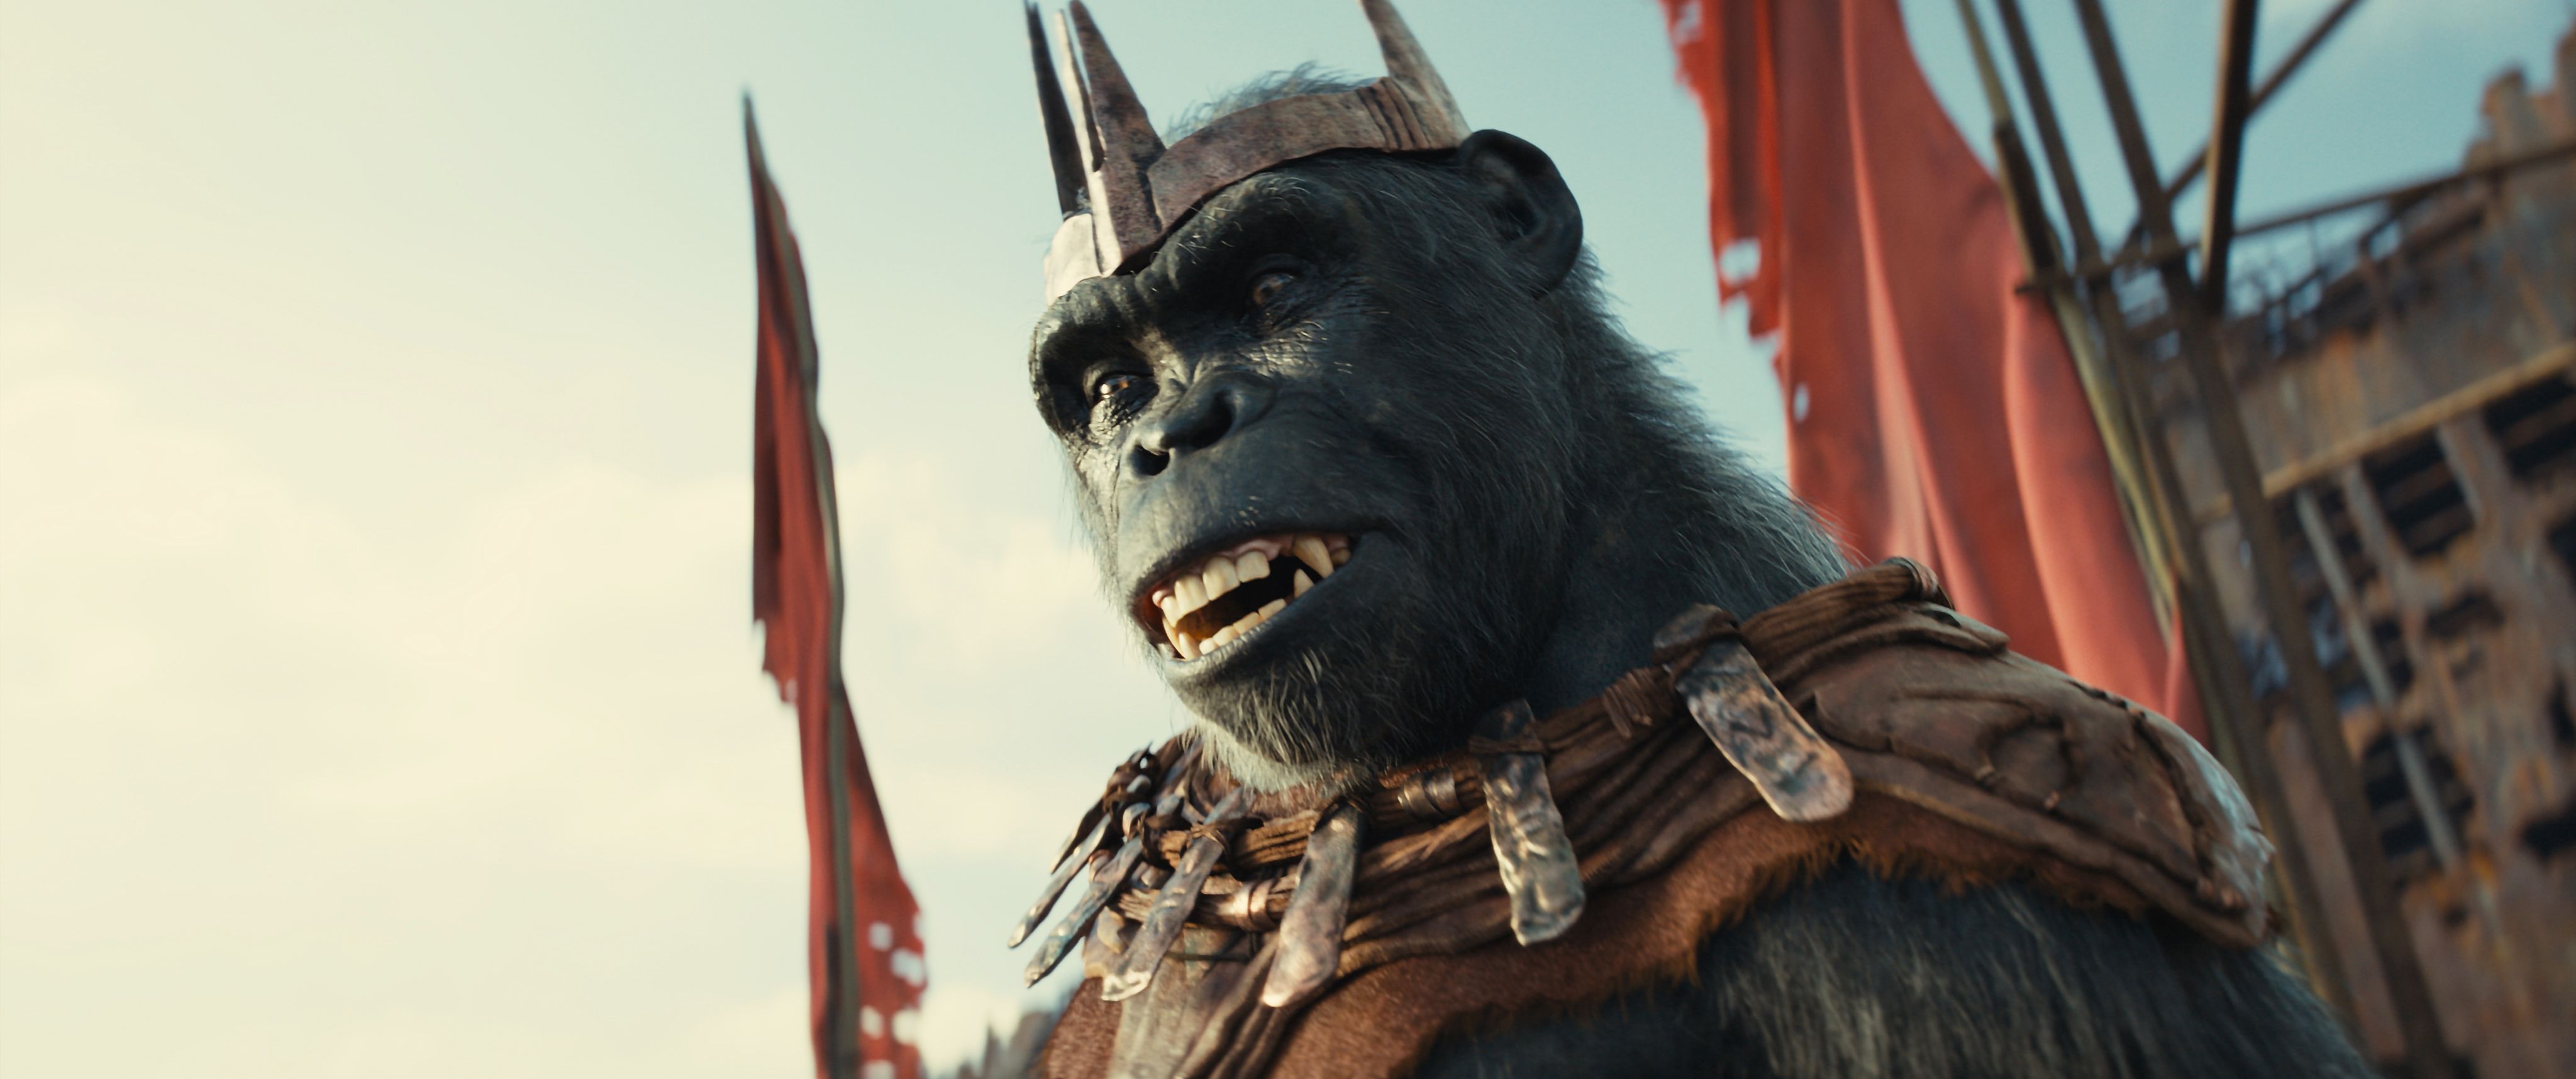 Королевство планеты обезьян получило высокий рейтинг на Rotten Tomatoes